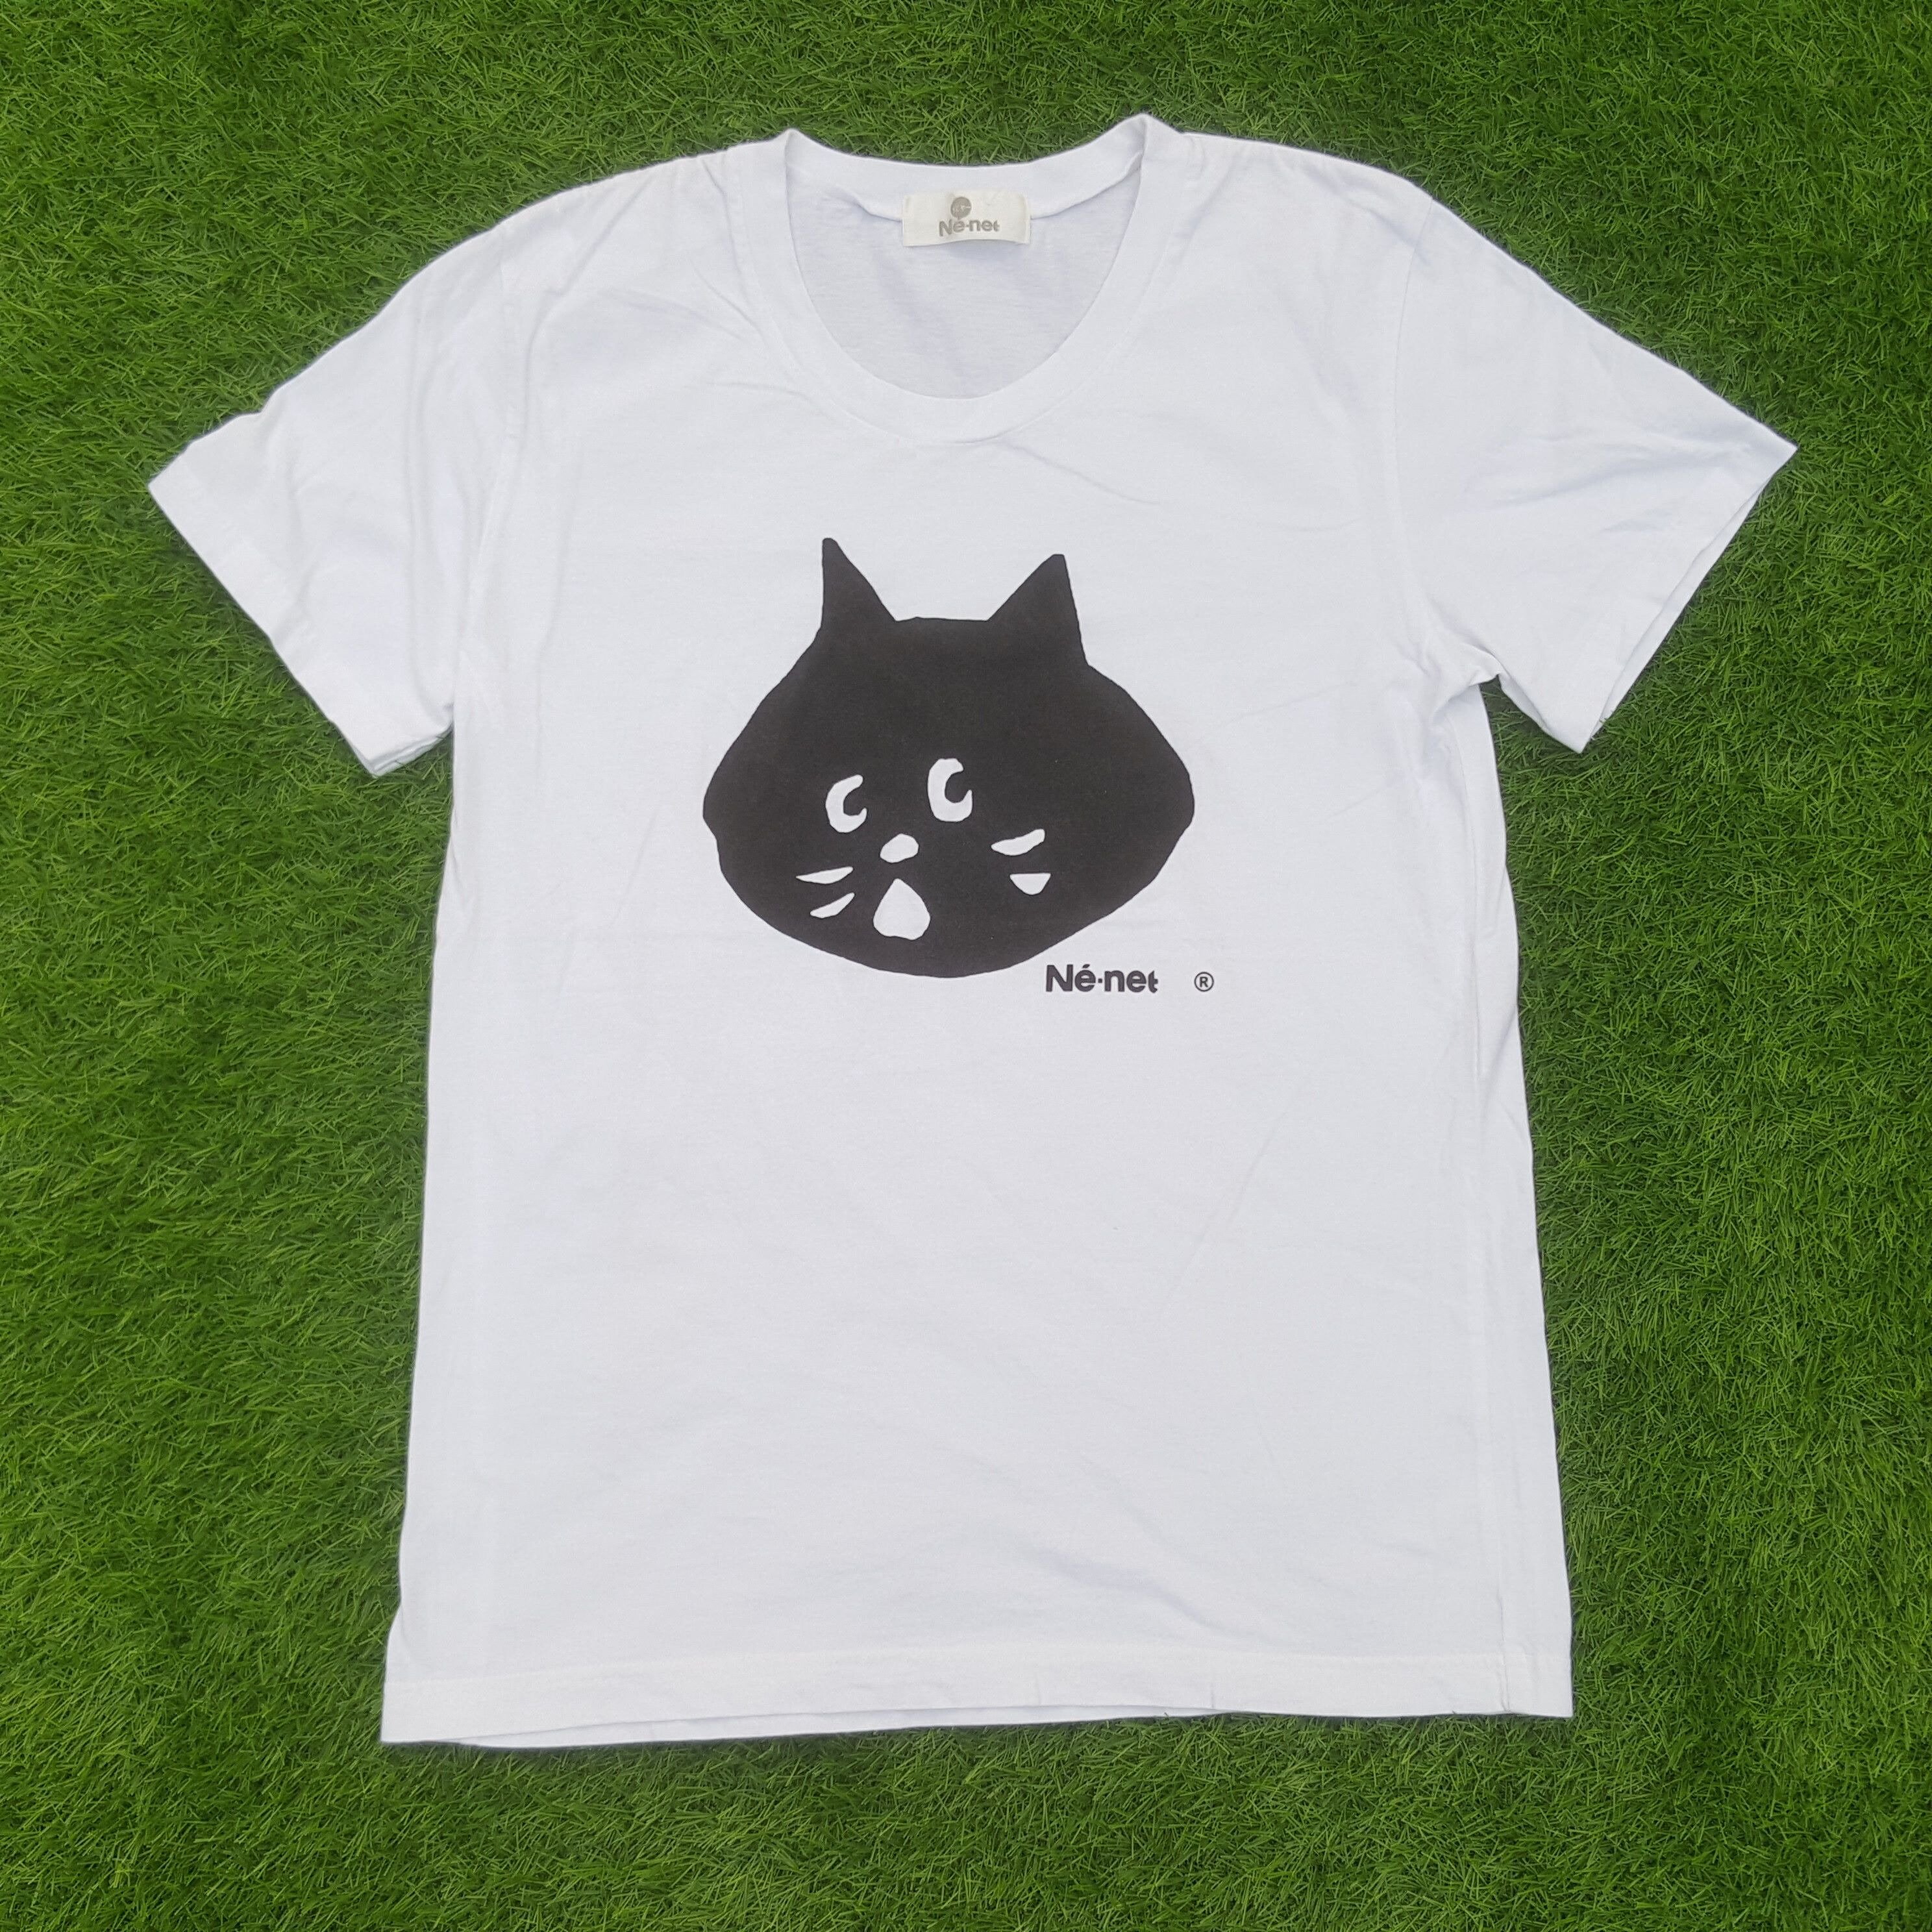 Issey Miyake - Ne-Net Big Print Japanese Brand Tshirt - 1